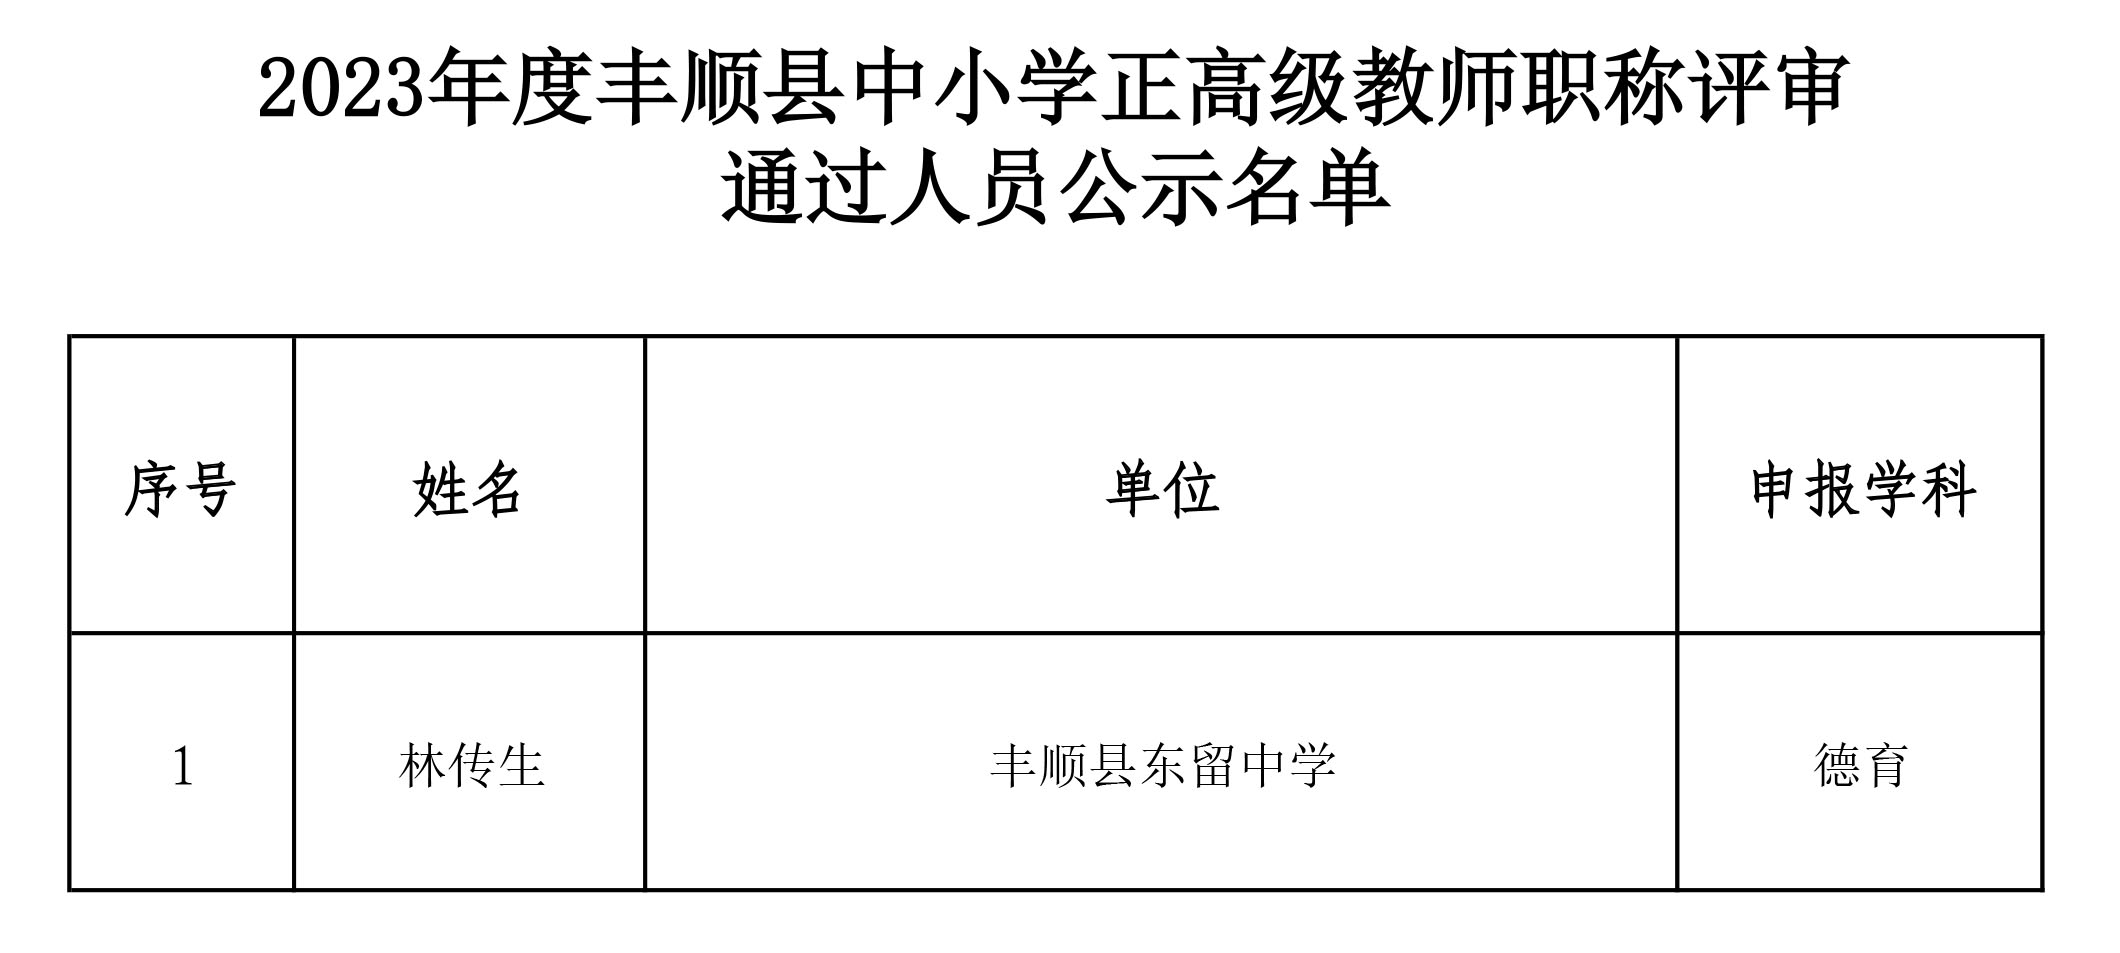 附件：2023年度丰顺县中小学正高级教师职称评审通过人员公示名单.jpg